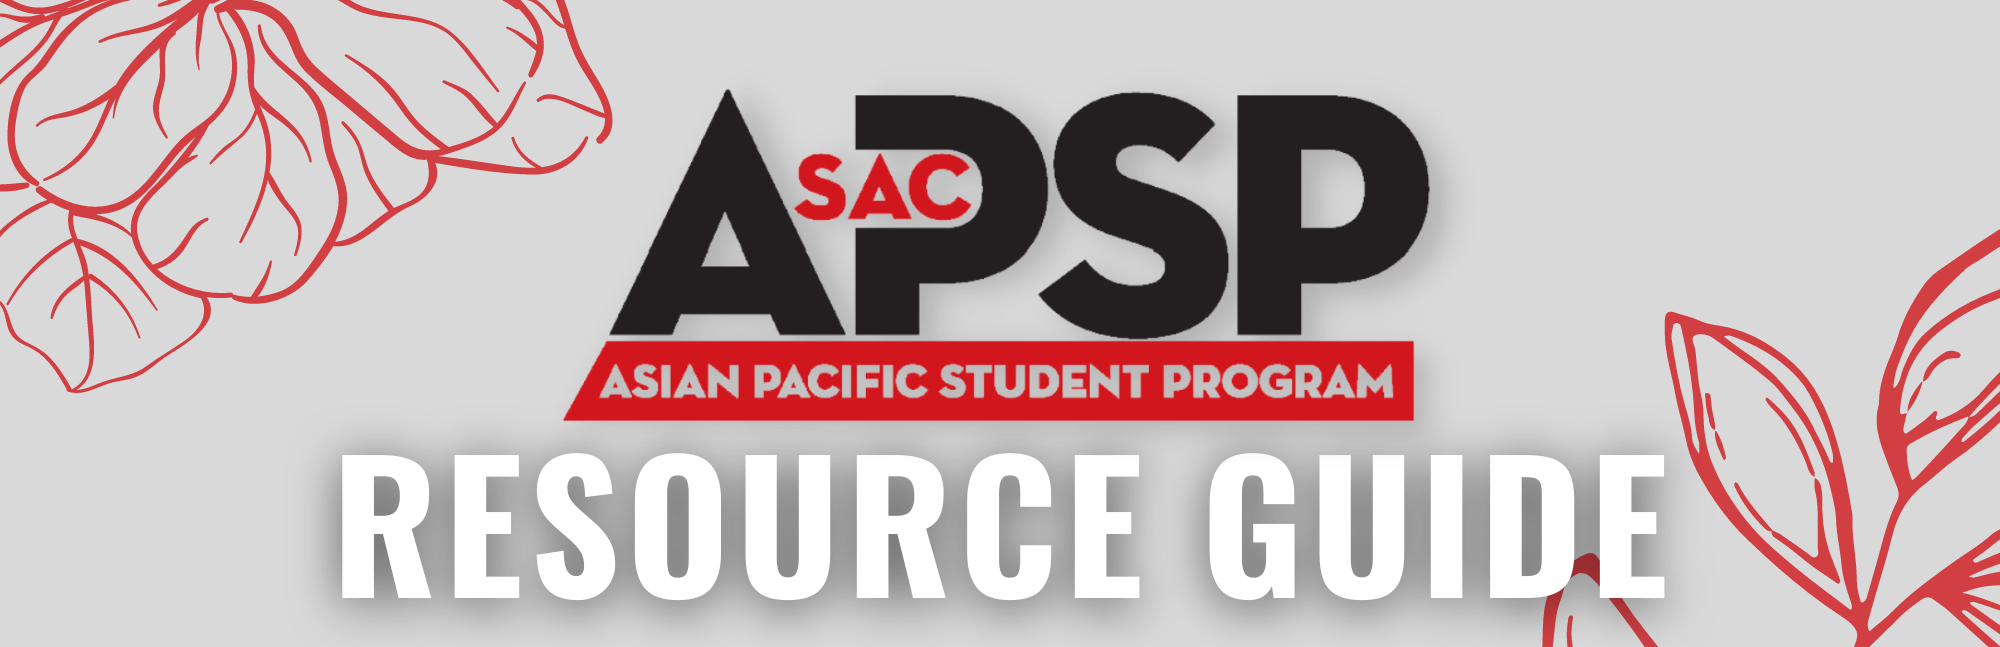 APSP Resource Guide 